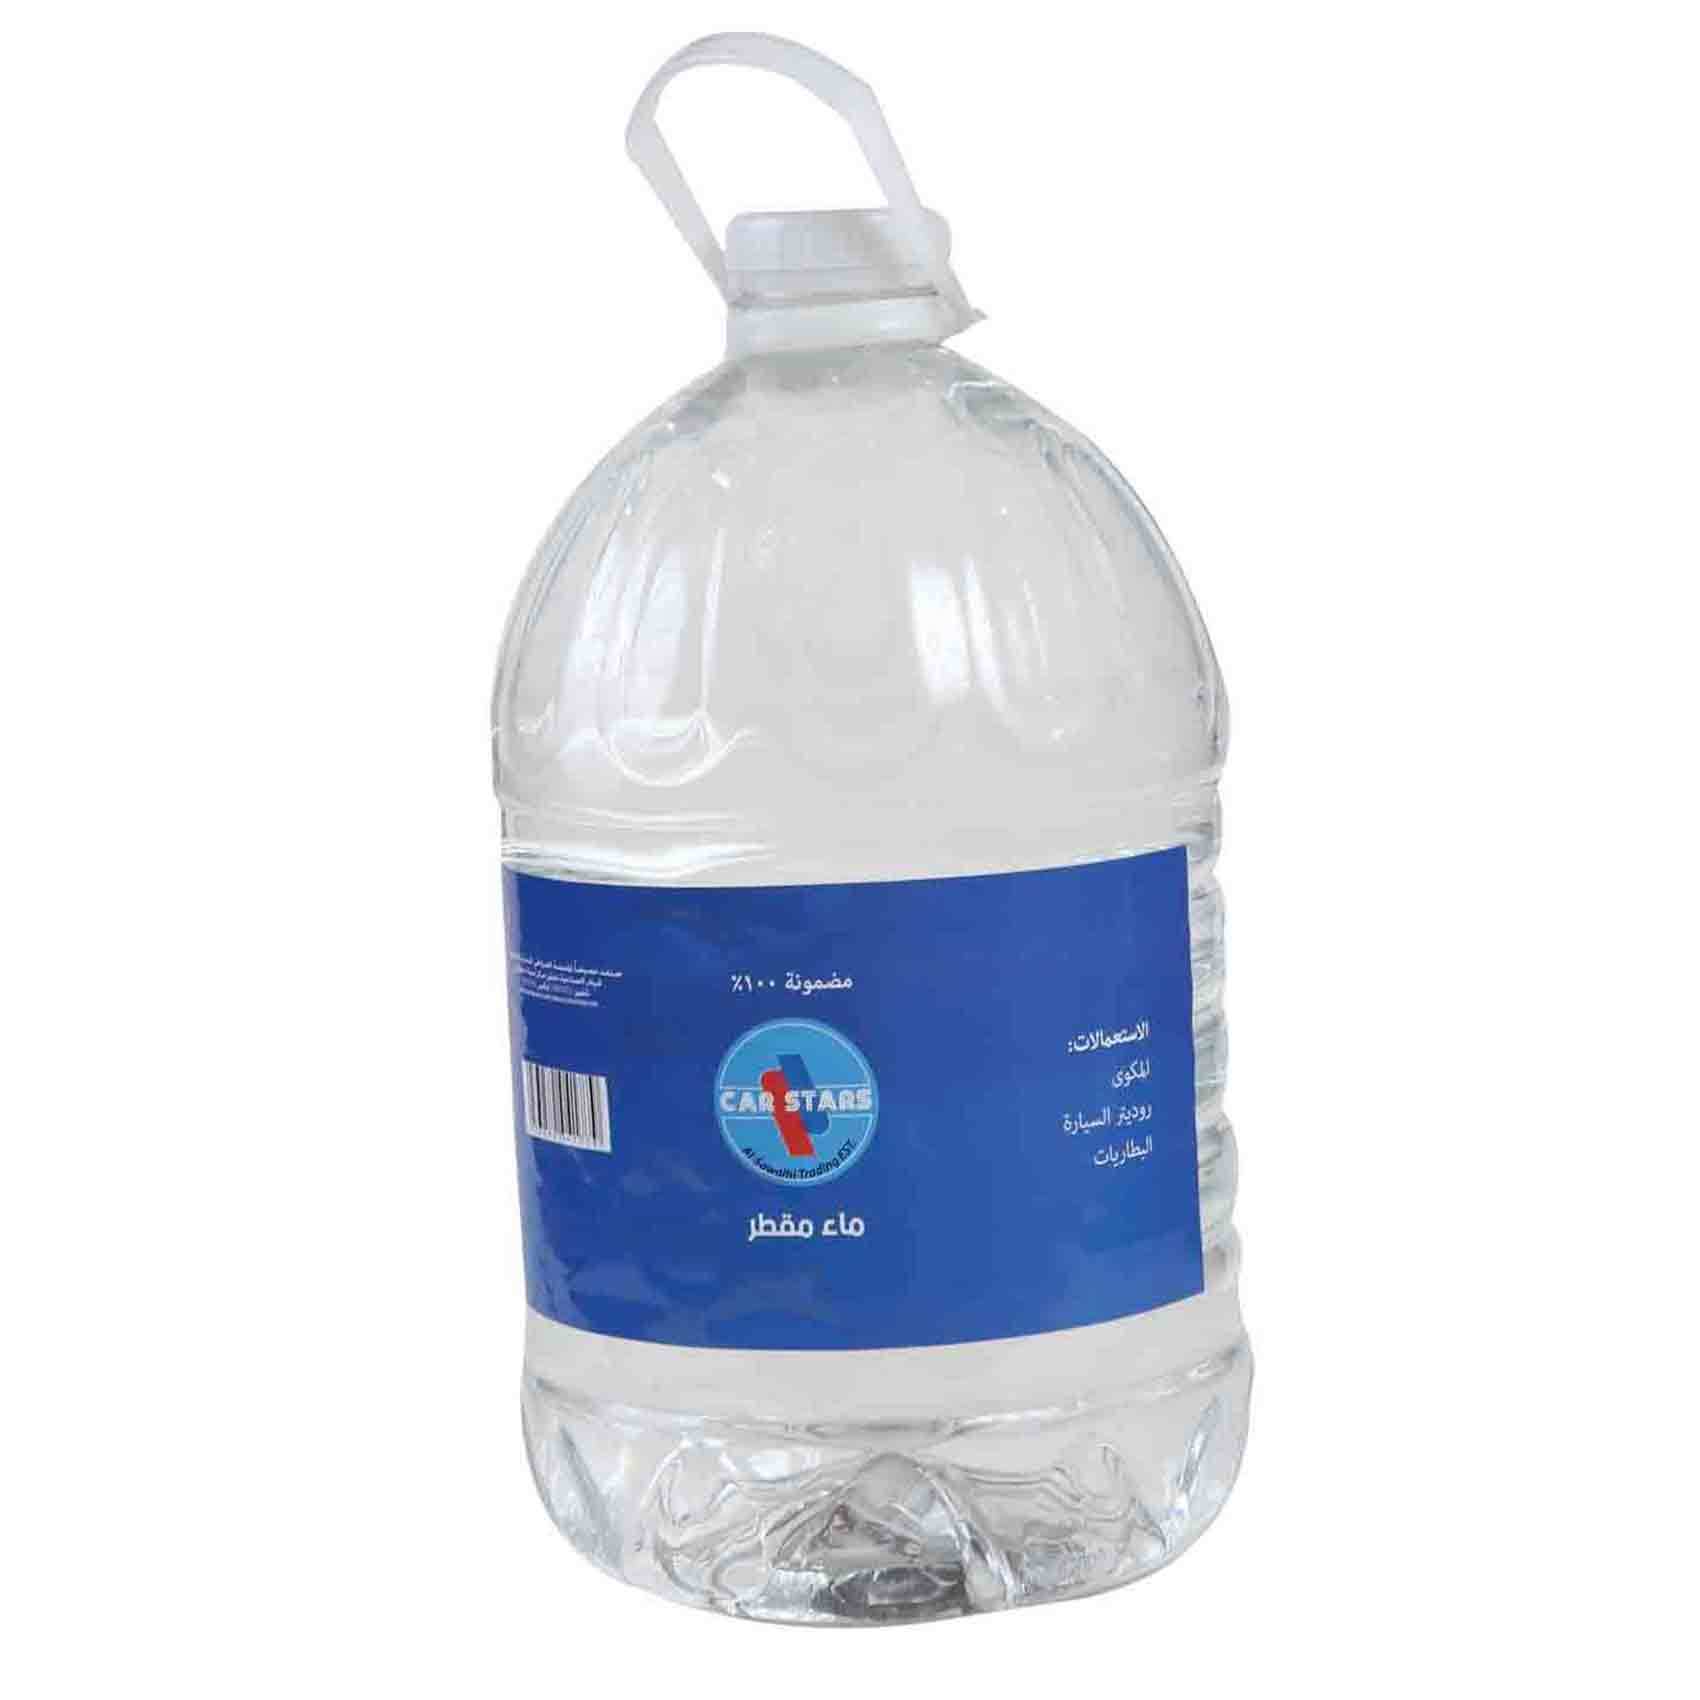 وصي منعش هندسة  Buy Distilled Water 3 Liters Online - Shop Automotive on Carrefour Jordan